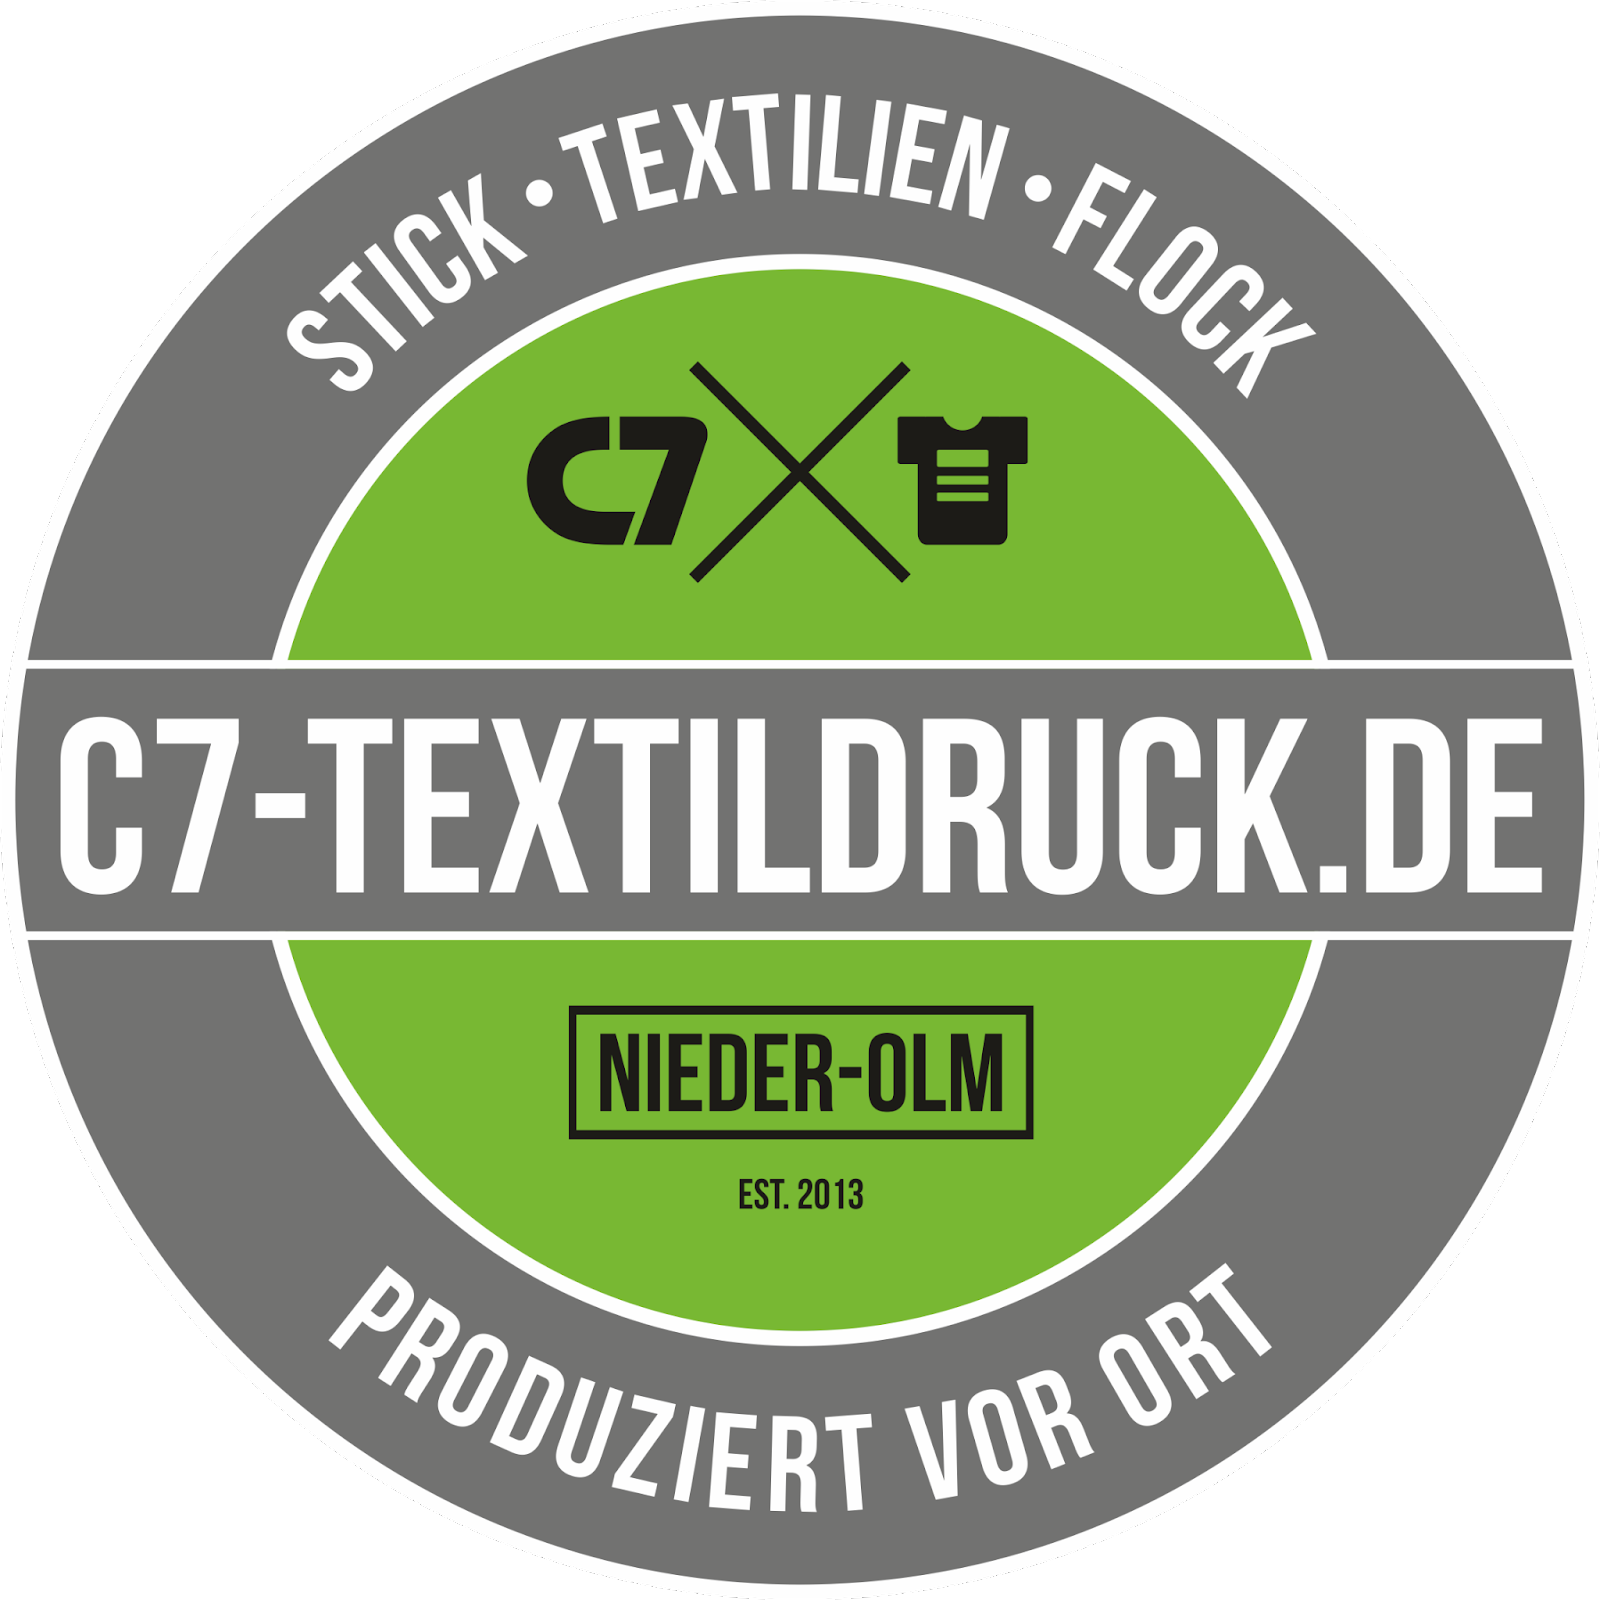 Link to C7 Textildruck